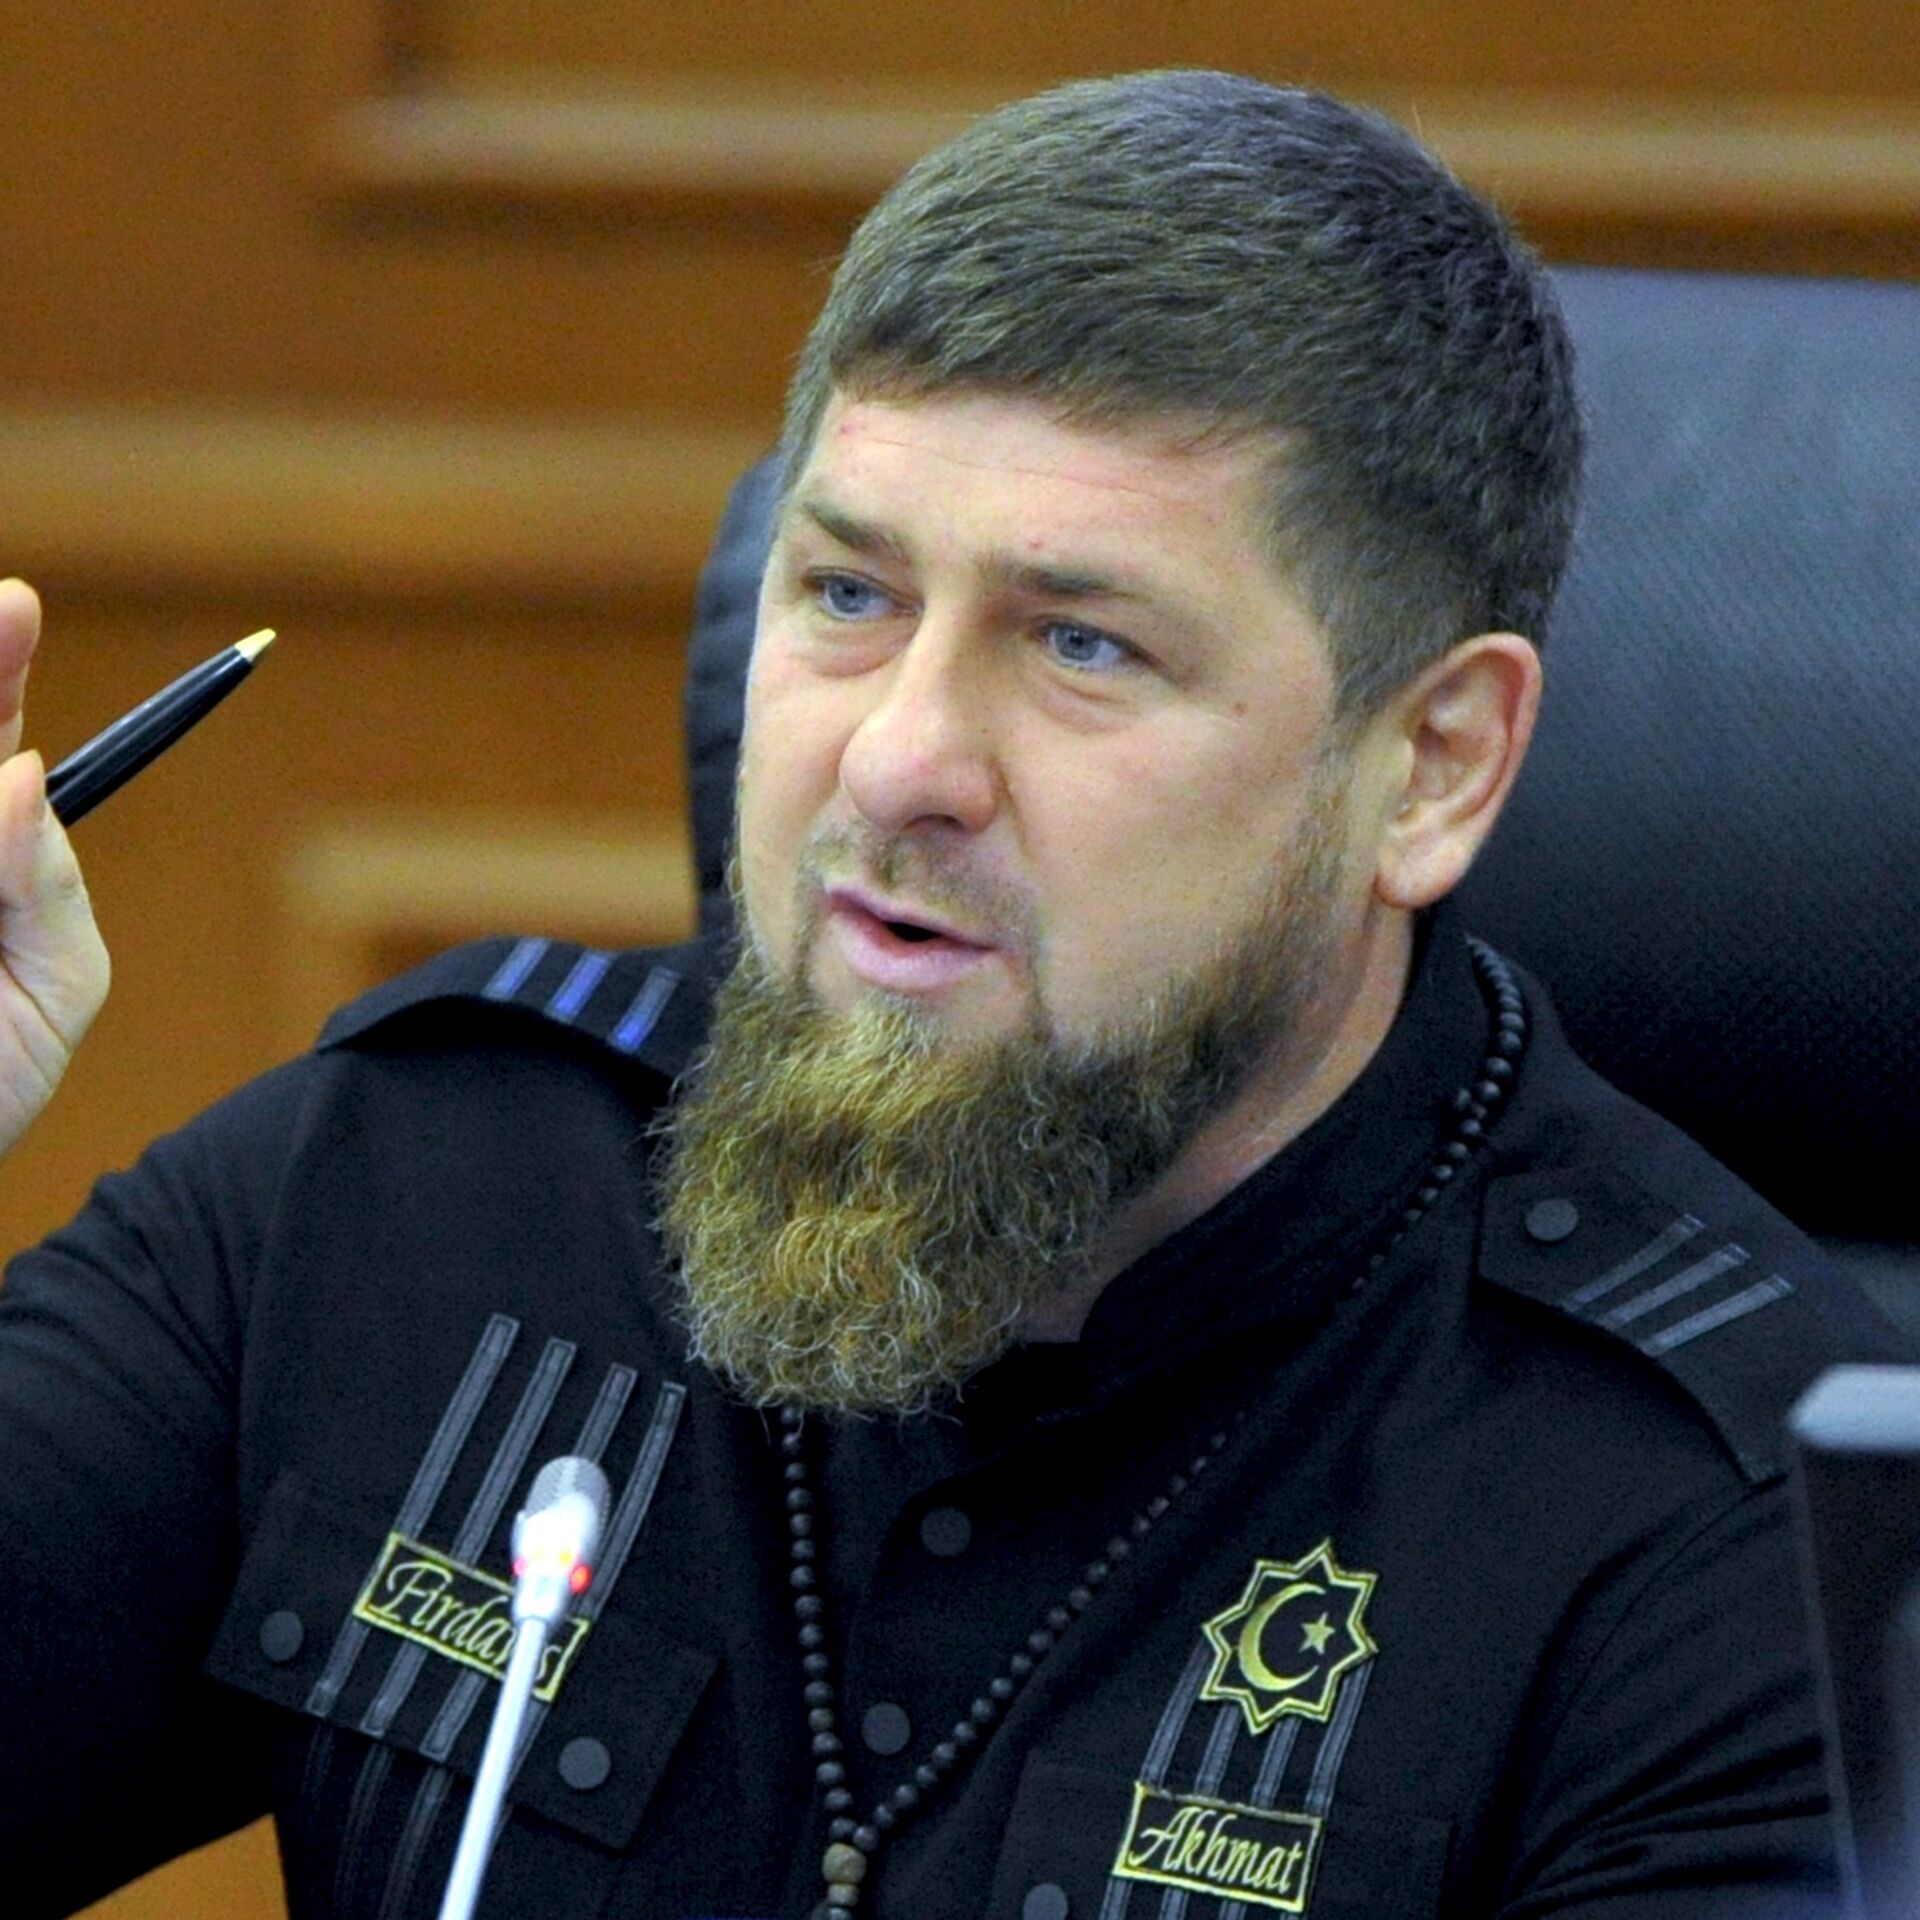 Чеченец с бородой: загадочный дресс-код чеченского бородача с усами и без них